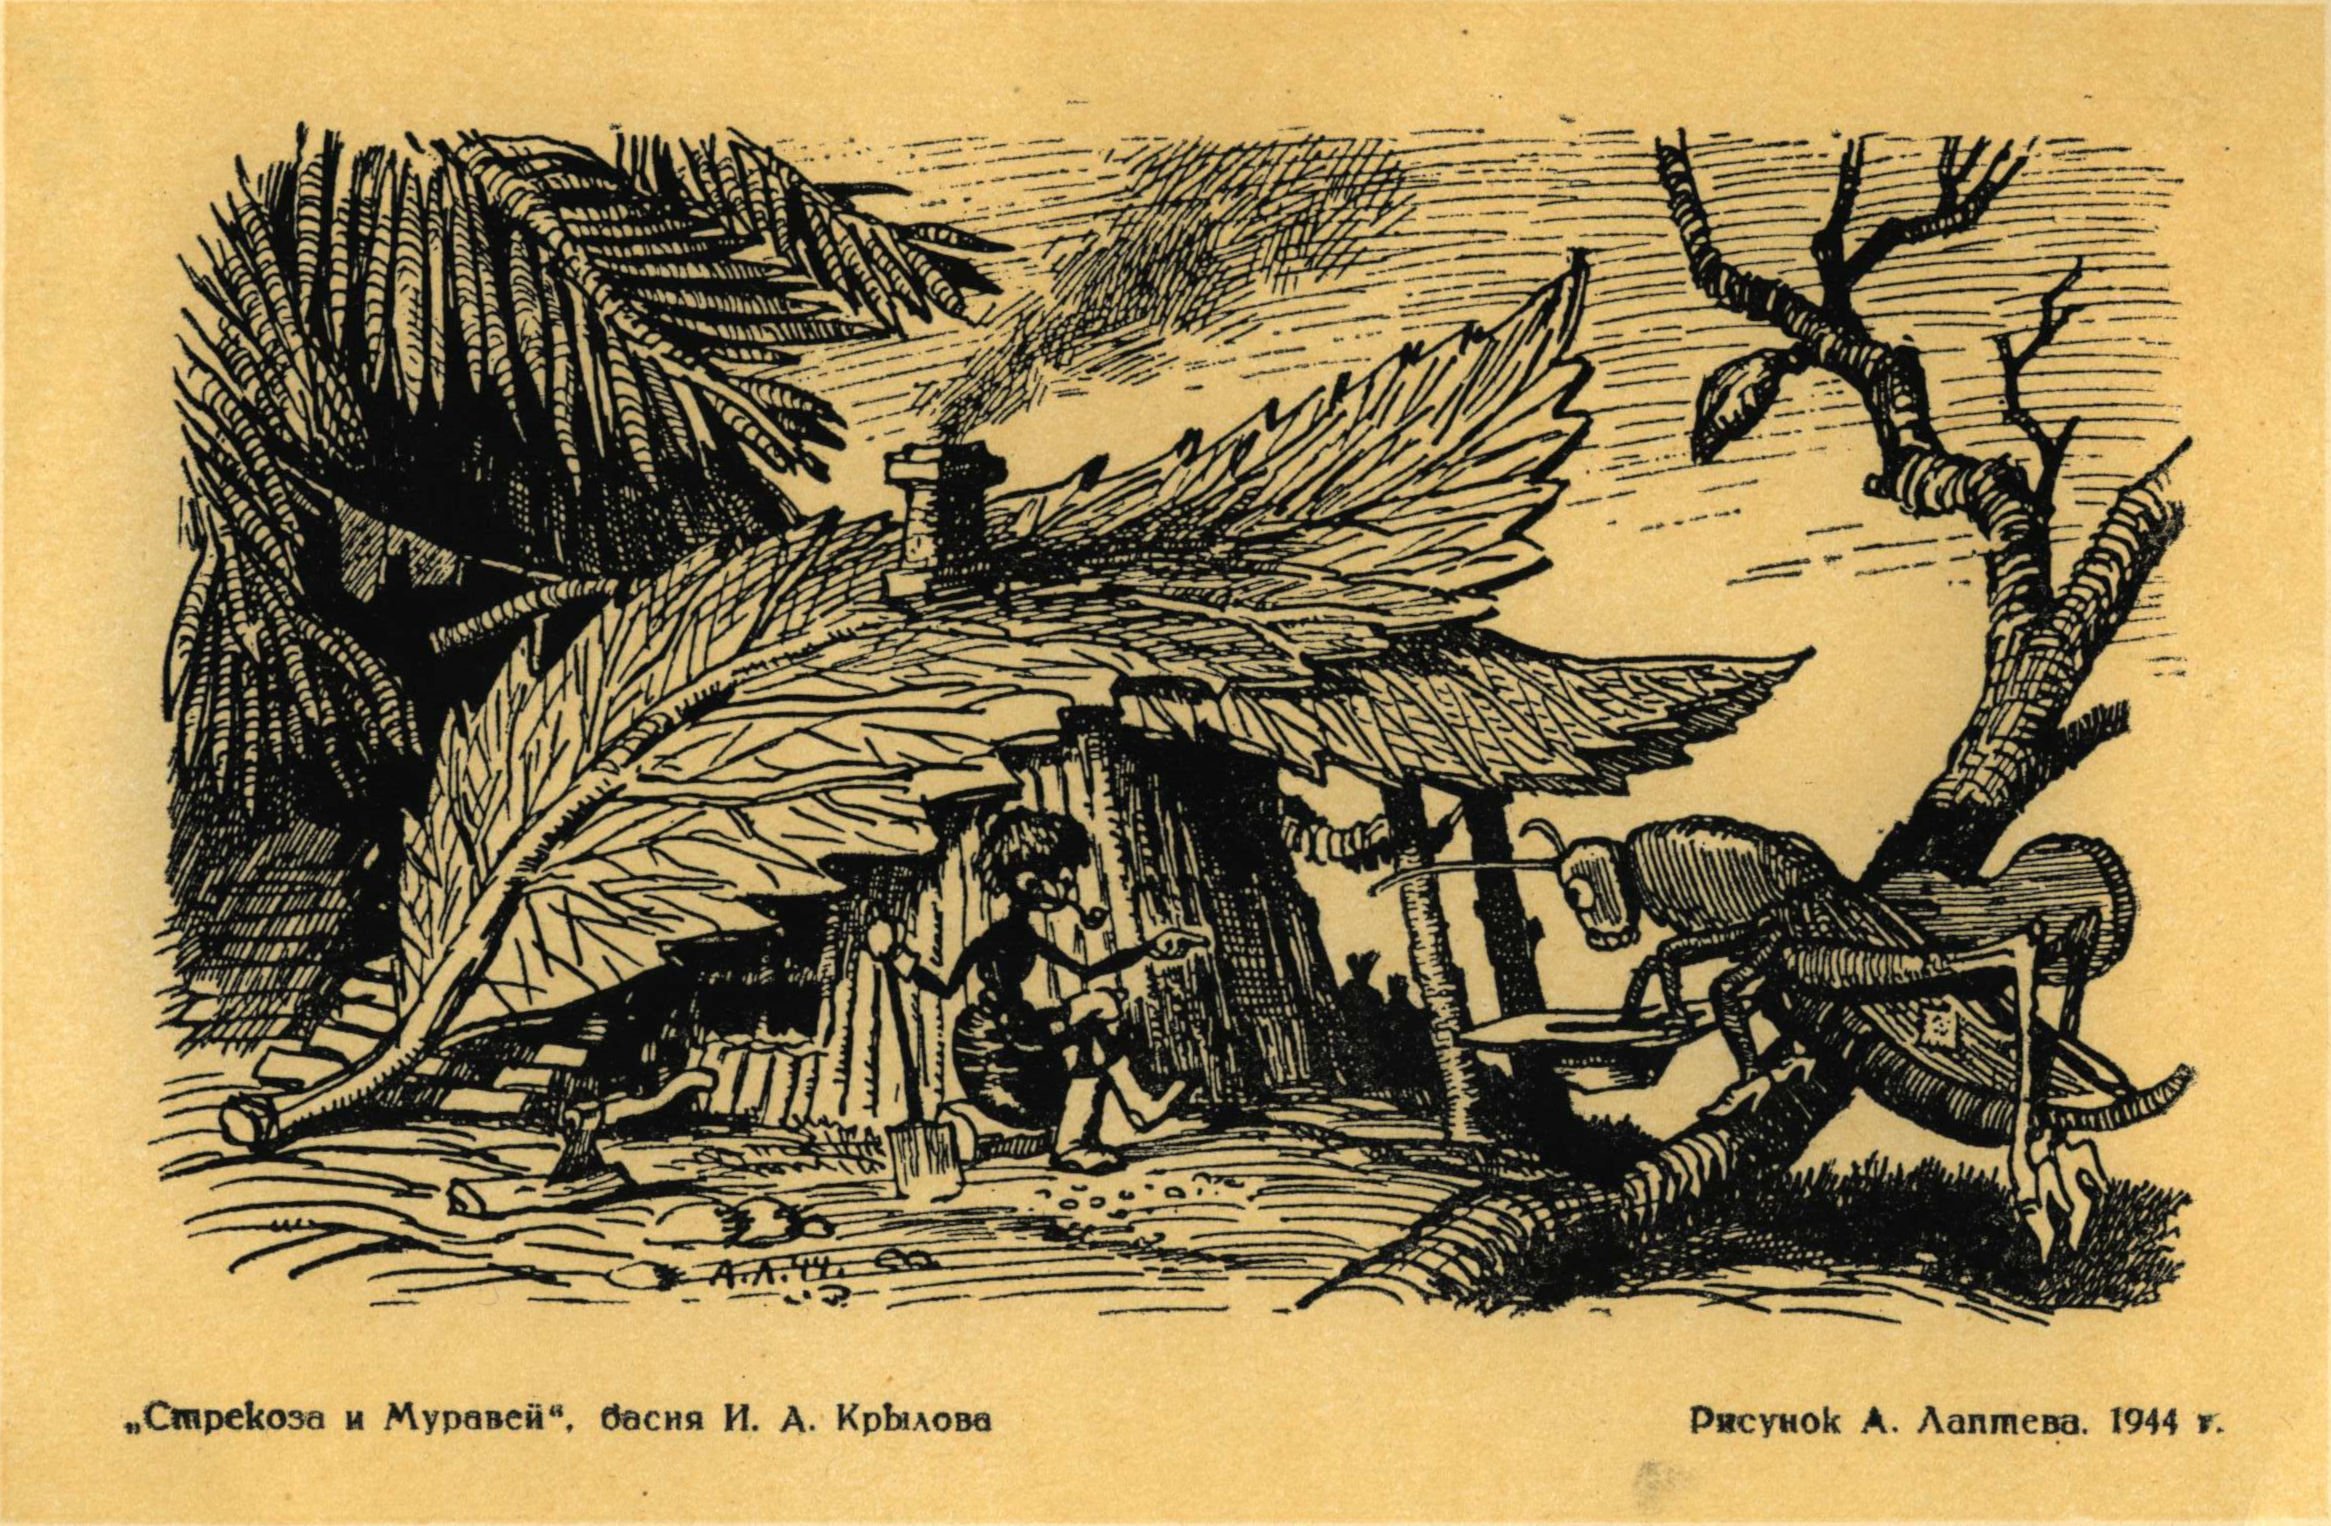 Иллюстрации Лаптева к басням Крылова